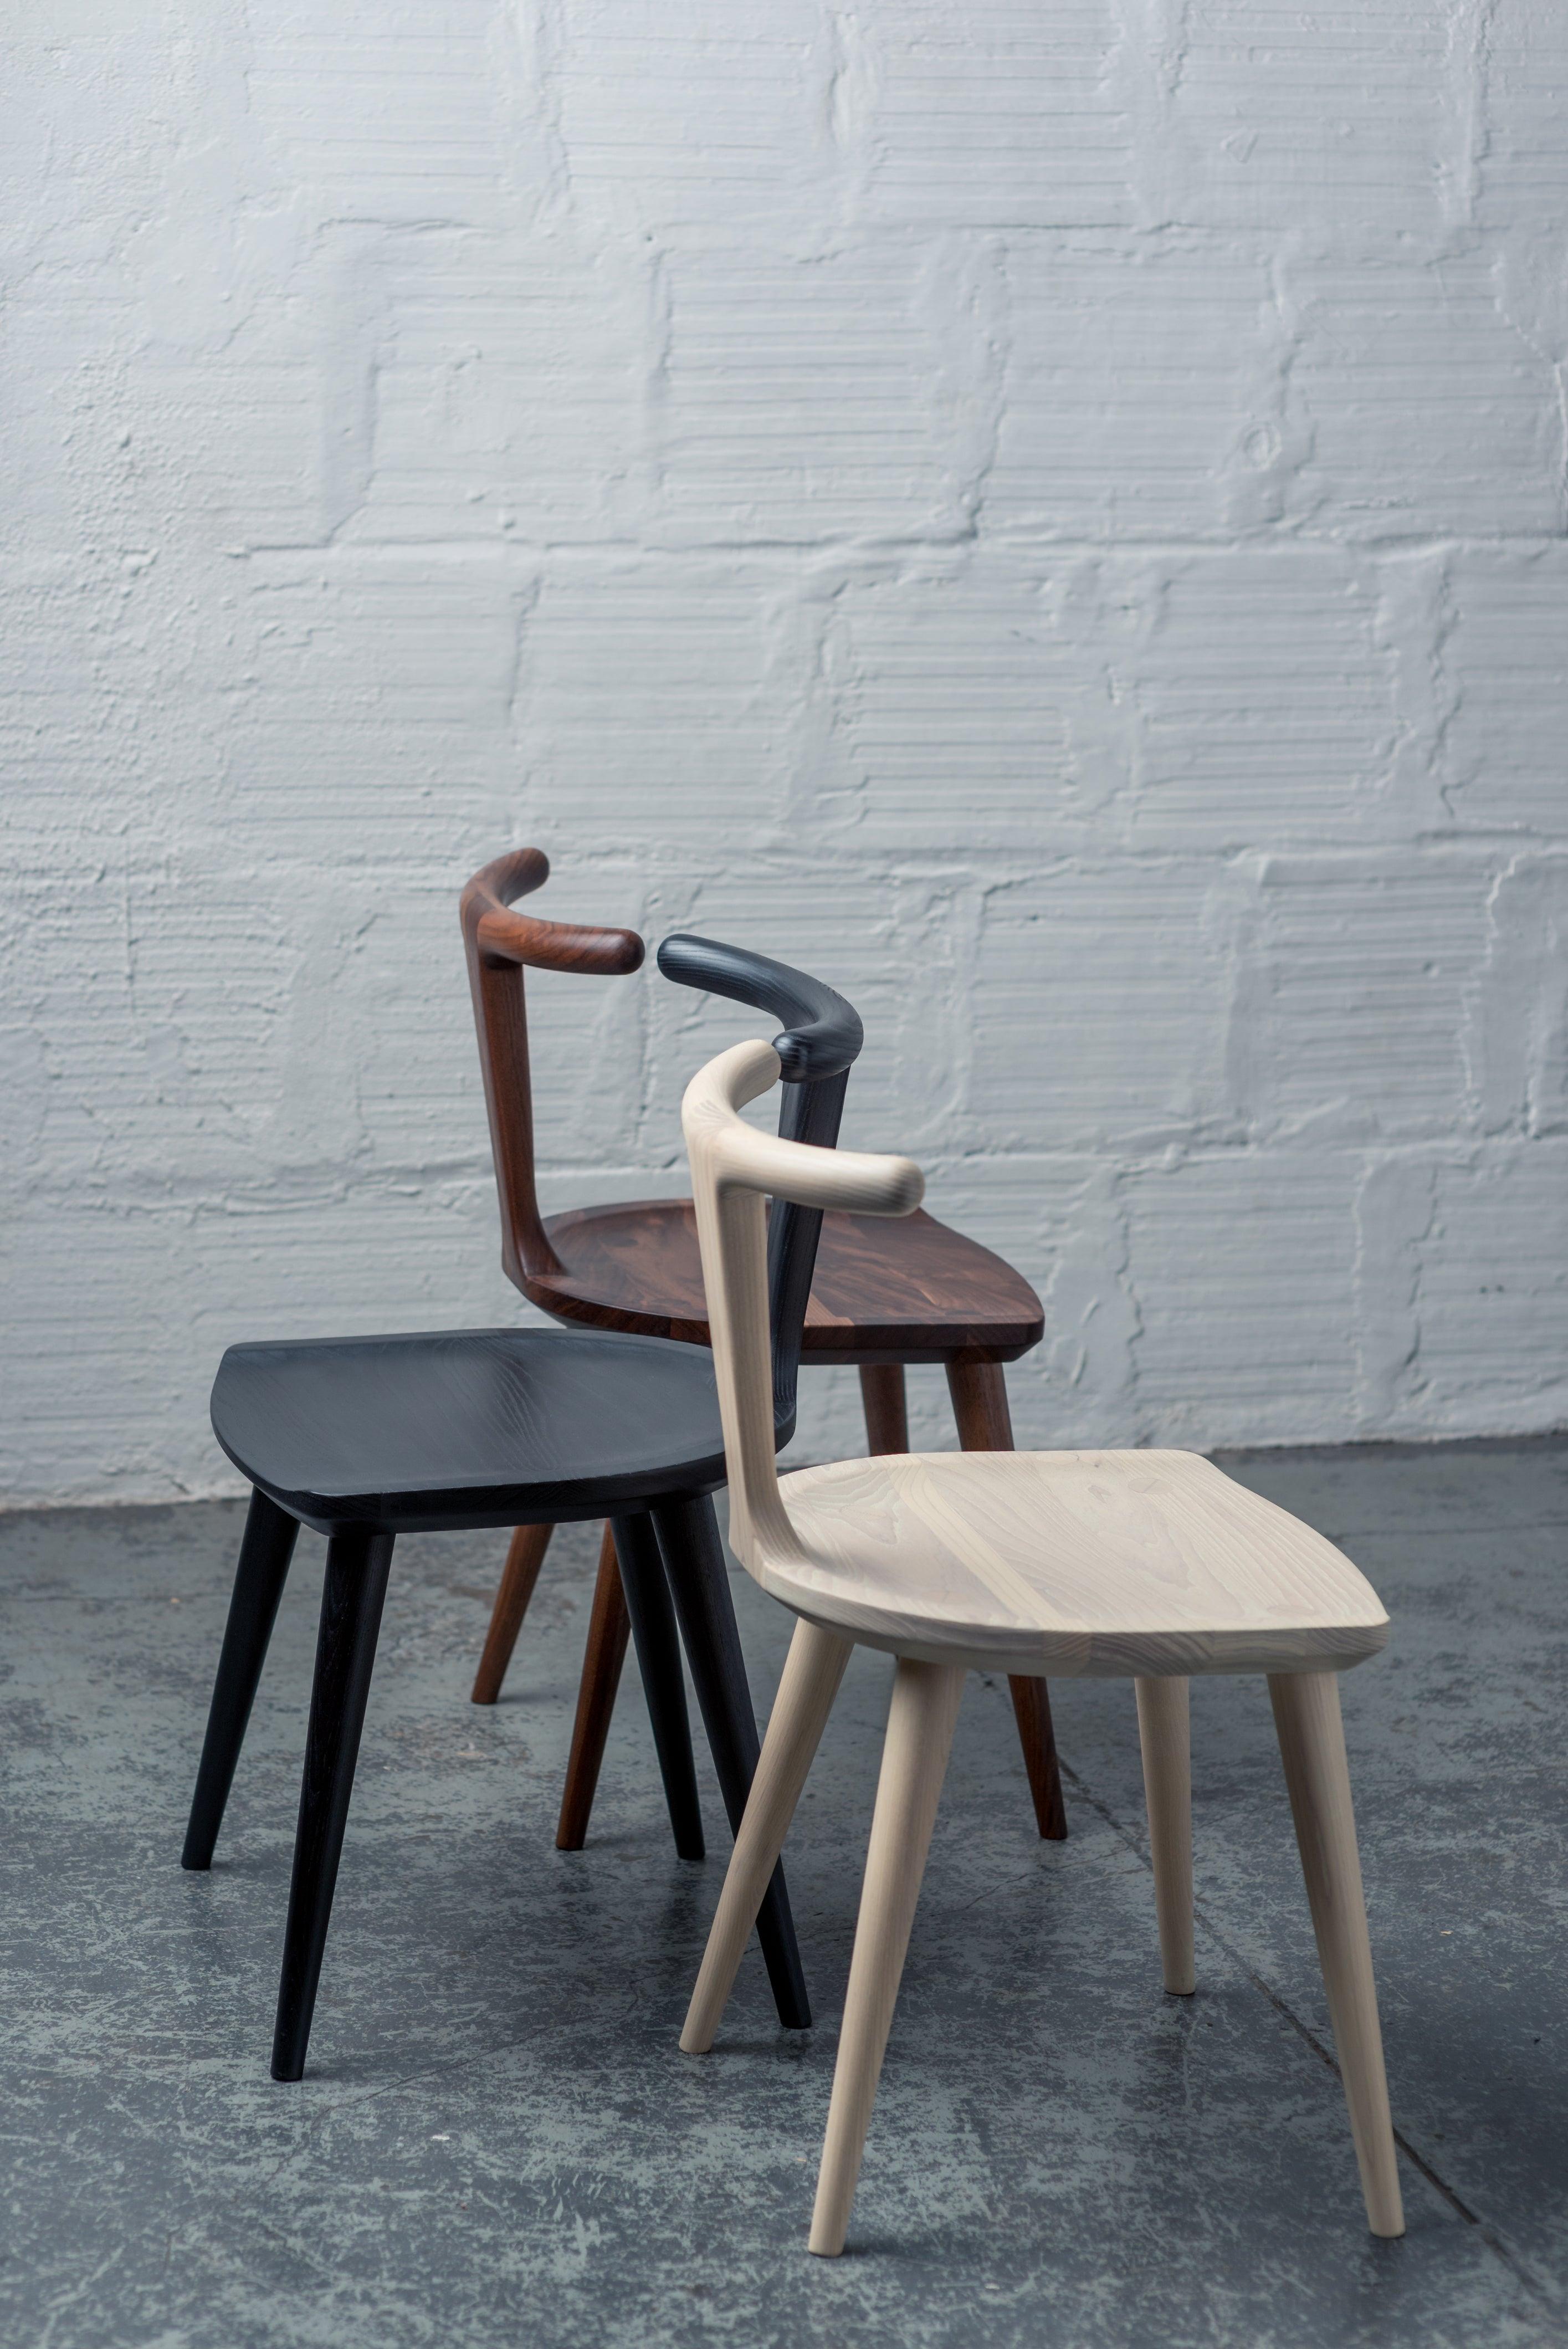 Inspiration originale de toute la collection Oxbend, cette chaise de salle à manger moderne a été conçue par Justin Nelson pour Fernweh Woodworking. Née du désir de créer une chaise de salle à manger confortable, organique et élégante dans sa